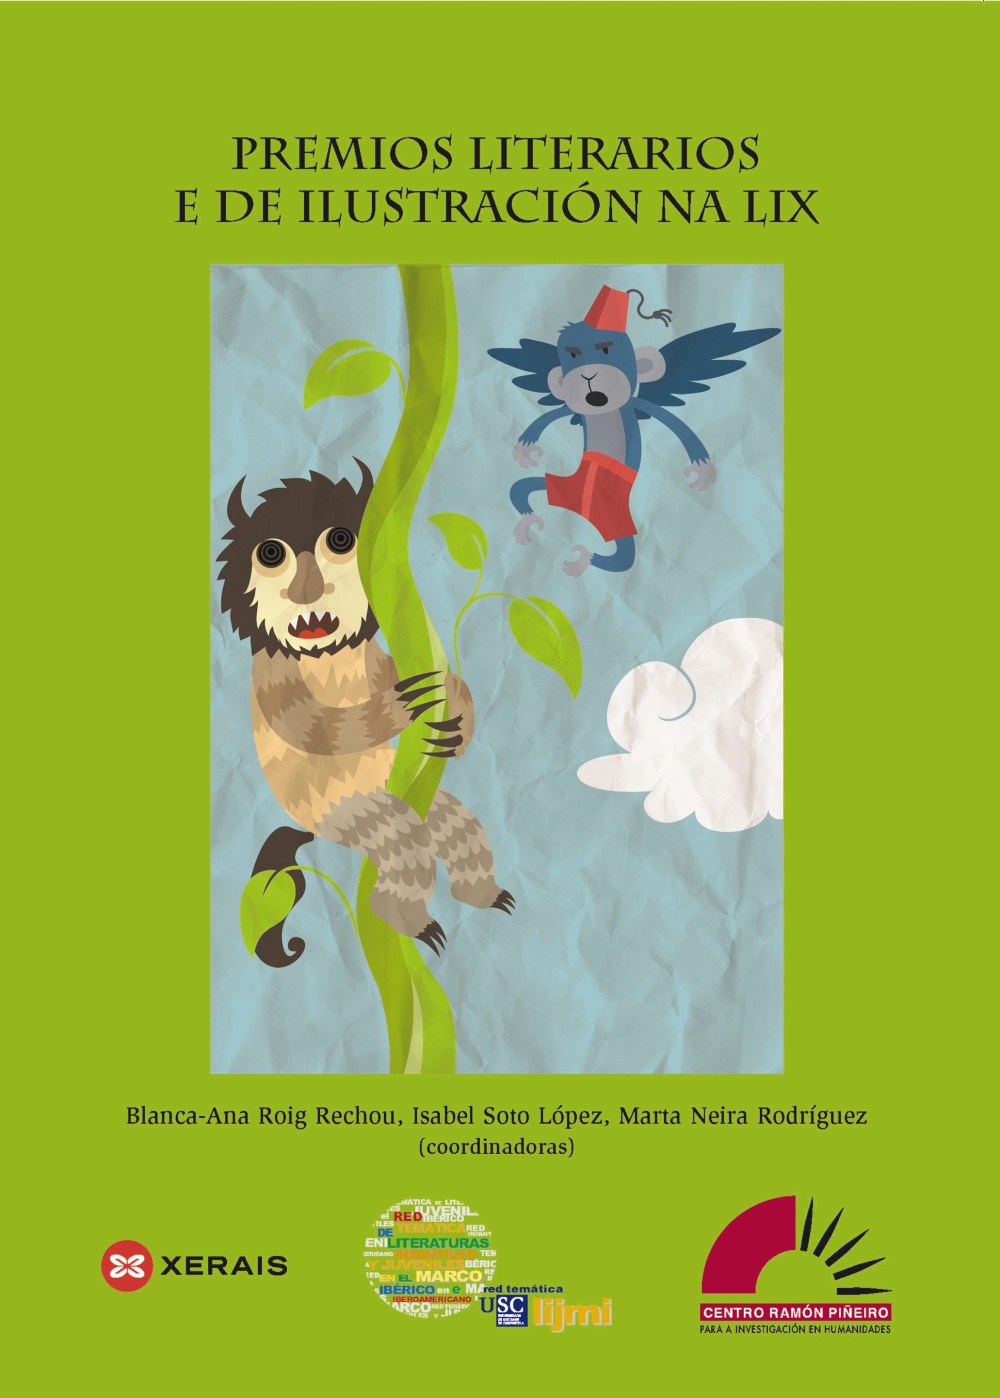 Premios Literarios e de ilustración na LIX